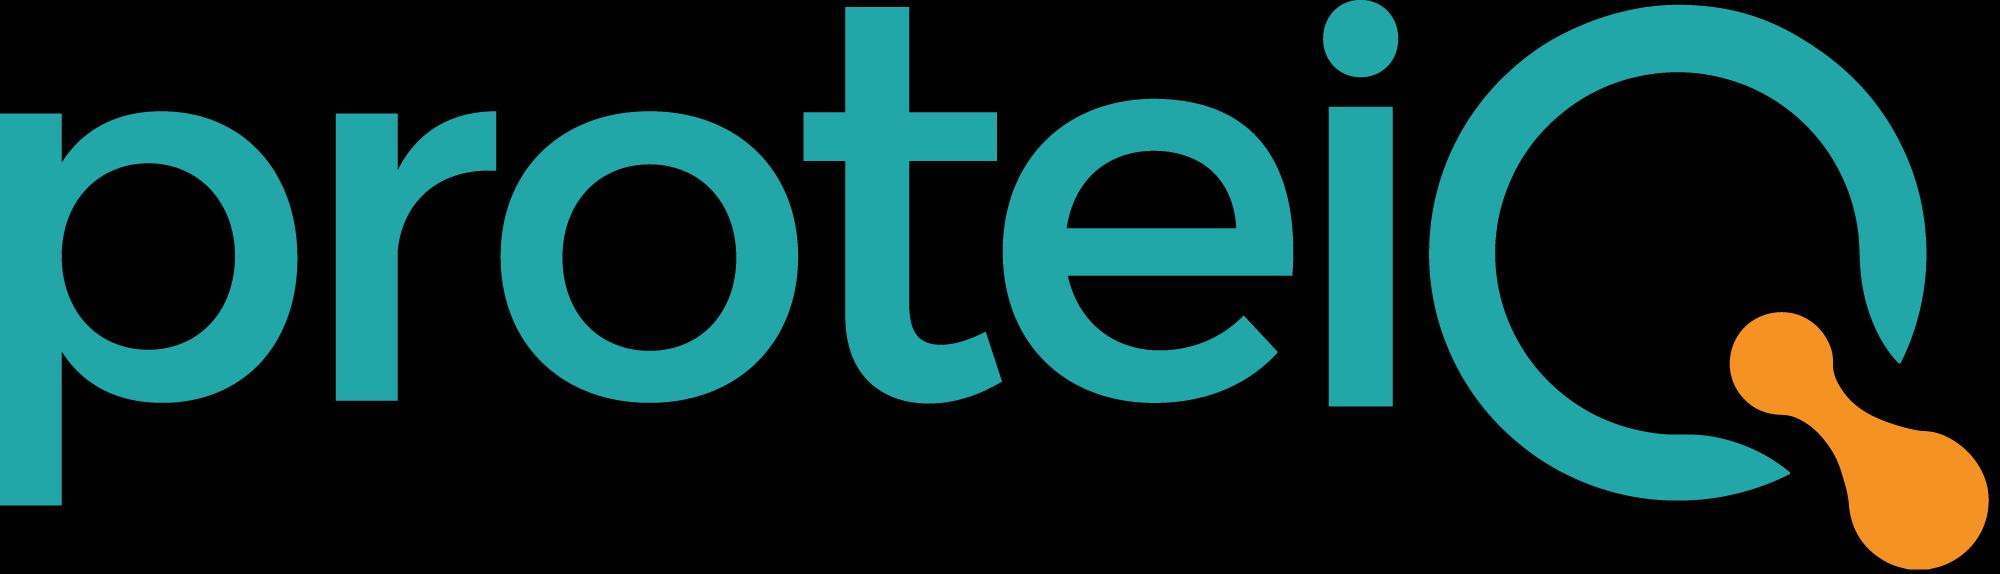 ProteiQ_logo